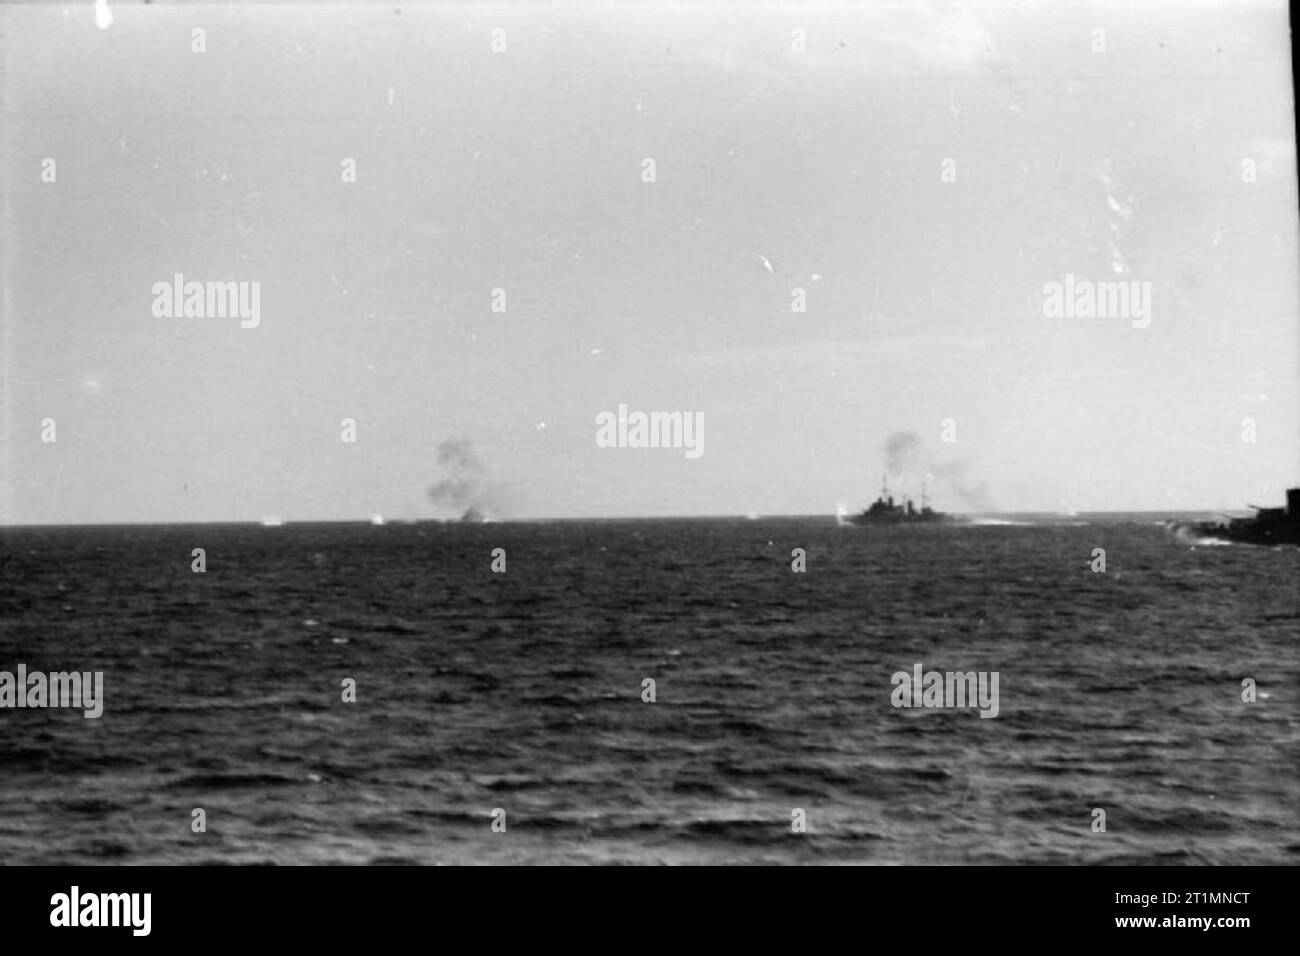 Die Royal Navy im Zweiten Weltkrieg Einheiten der Flotte unter Feuer in der Ferne während der Aktion aus Sardinien. Foto von HMS Sheffield genommen. Einen italienischen Kreuzer und zwei italienischen Zerstörer wurden in diese Aktion beschädigt. Stockfoto